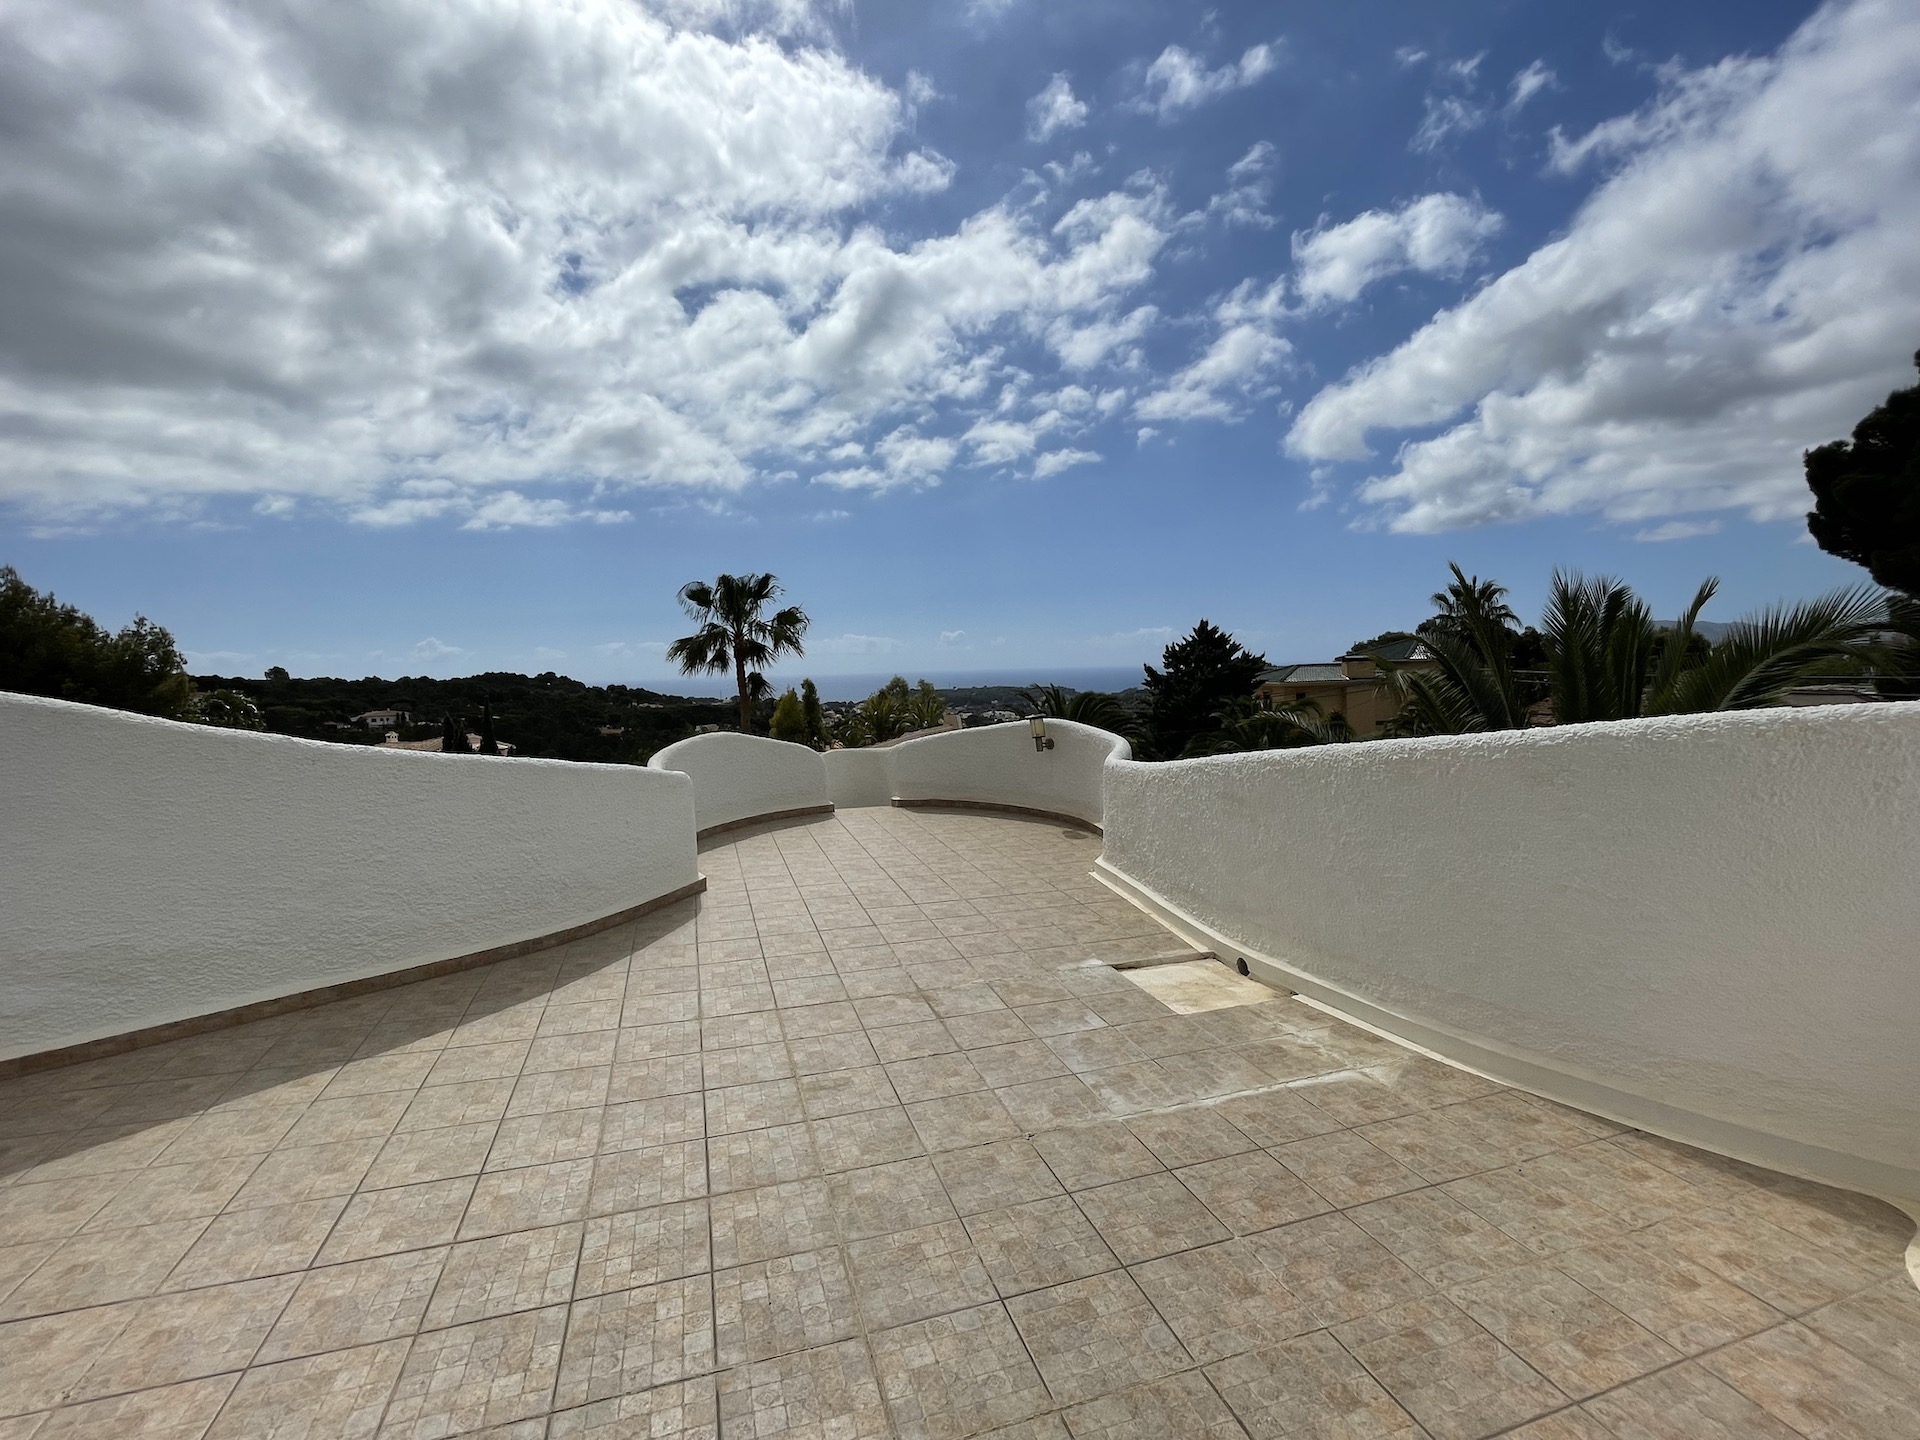 Pittoreske villa in Ibiza-stijl in Paraiso Altea